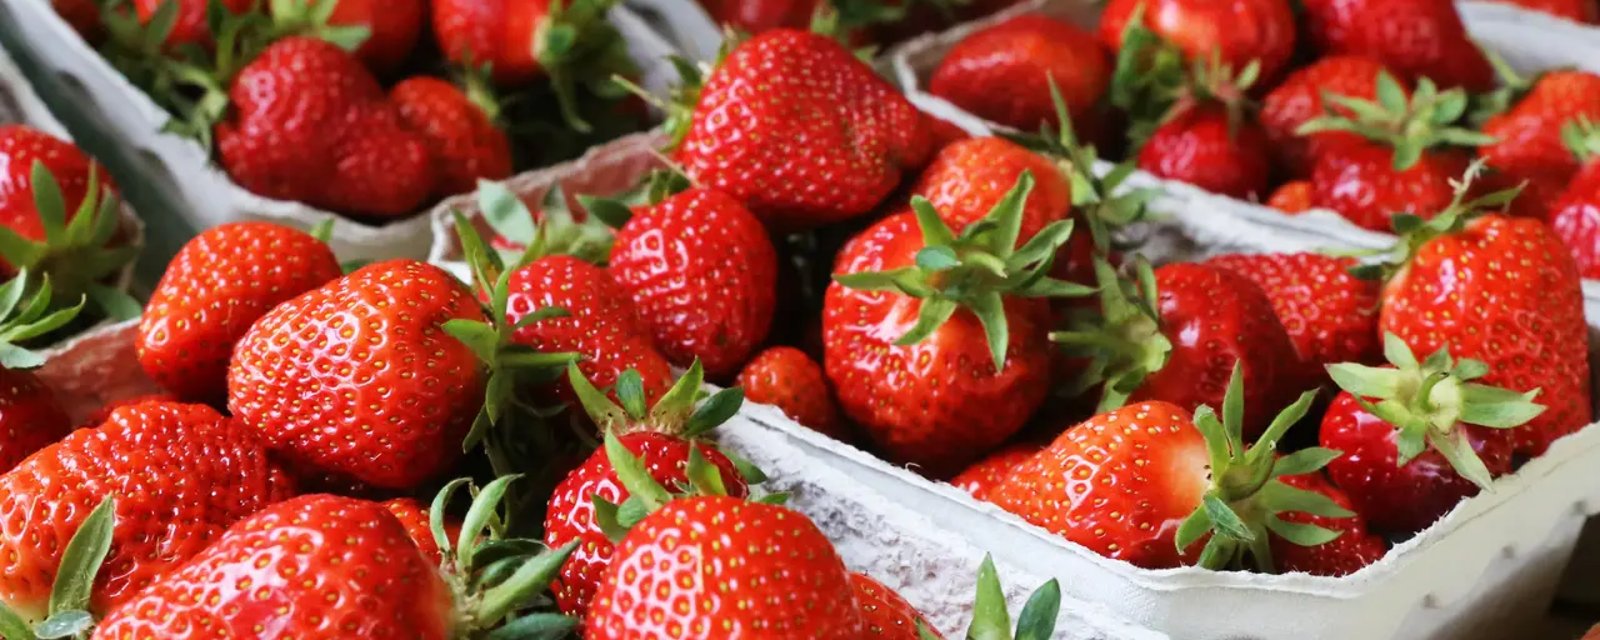 Les fraises du Québec seront enfin disponibles pendant toute l'année 